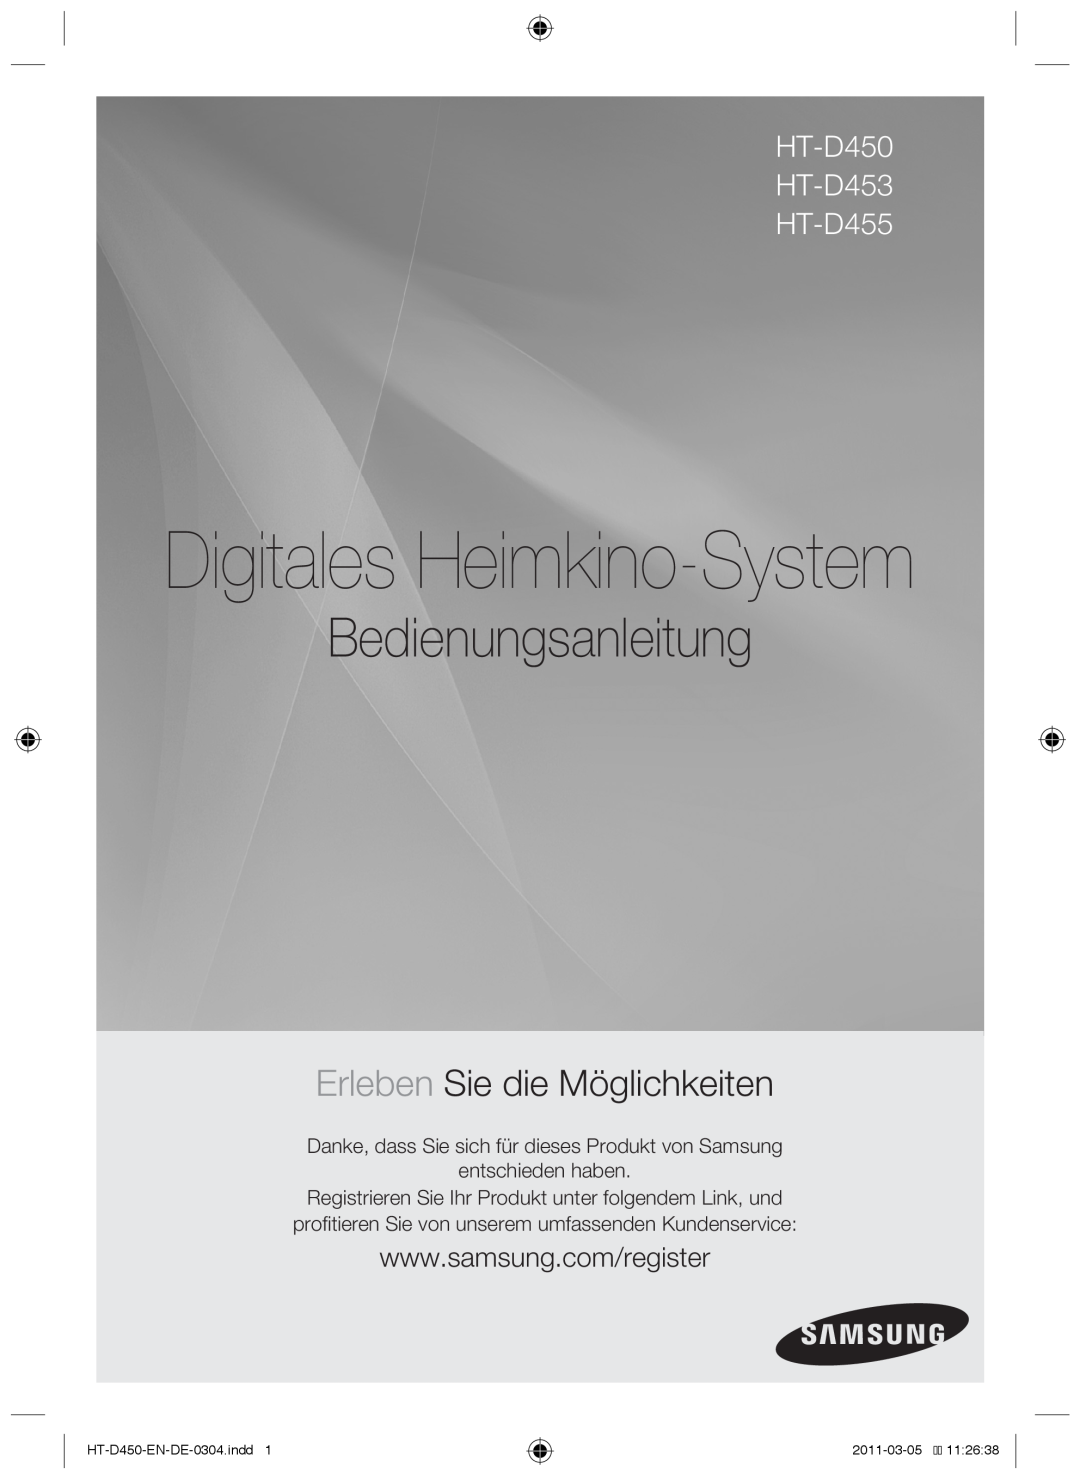 Samsung HT-D455, HT-D450 Bedienungsanleitung, Erleben Sie die Möglichkeiten, entschieden haben, Digitales Heimkino-System 